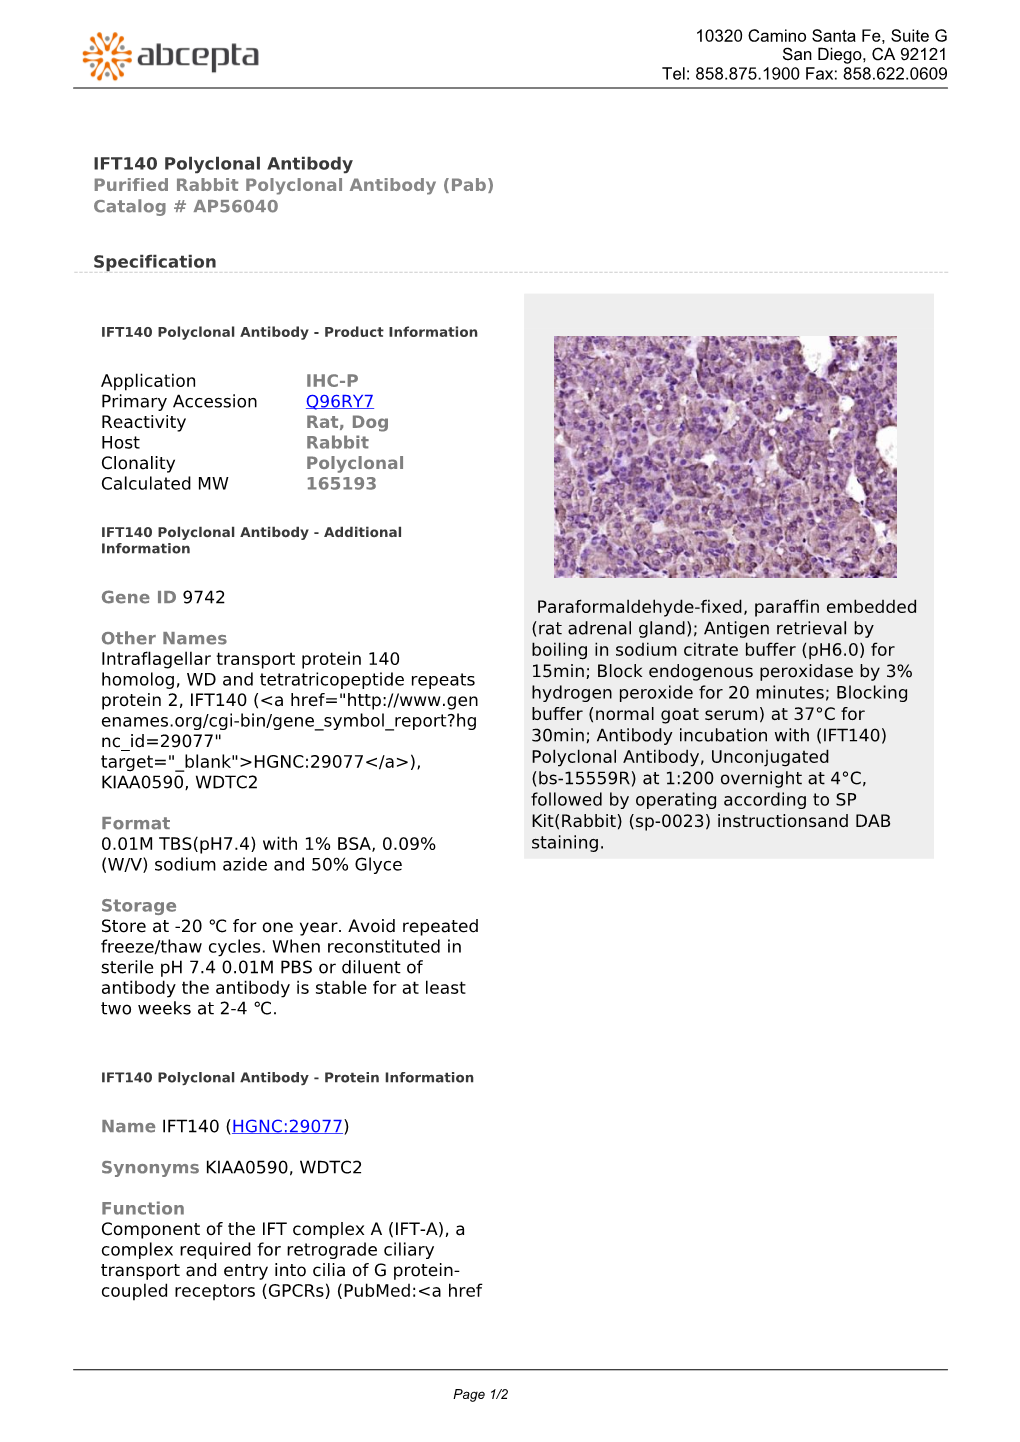 IFT140 Polyclonal Antibody Purified Rabbit Polyclonal Antibody (Pab) Catalog # AP56040